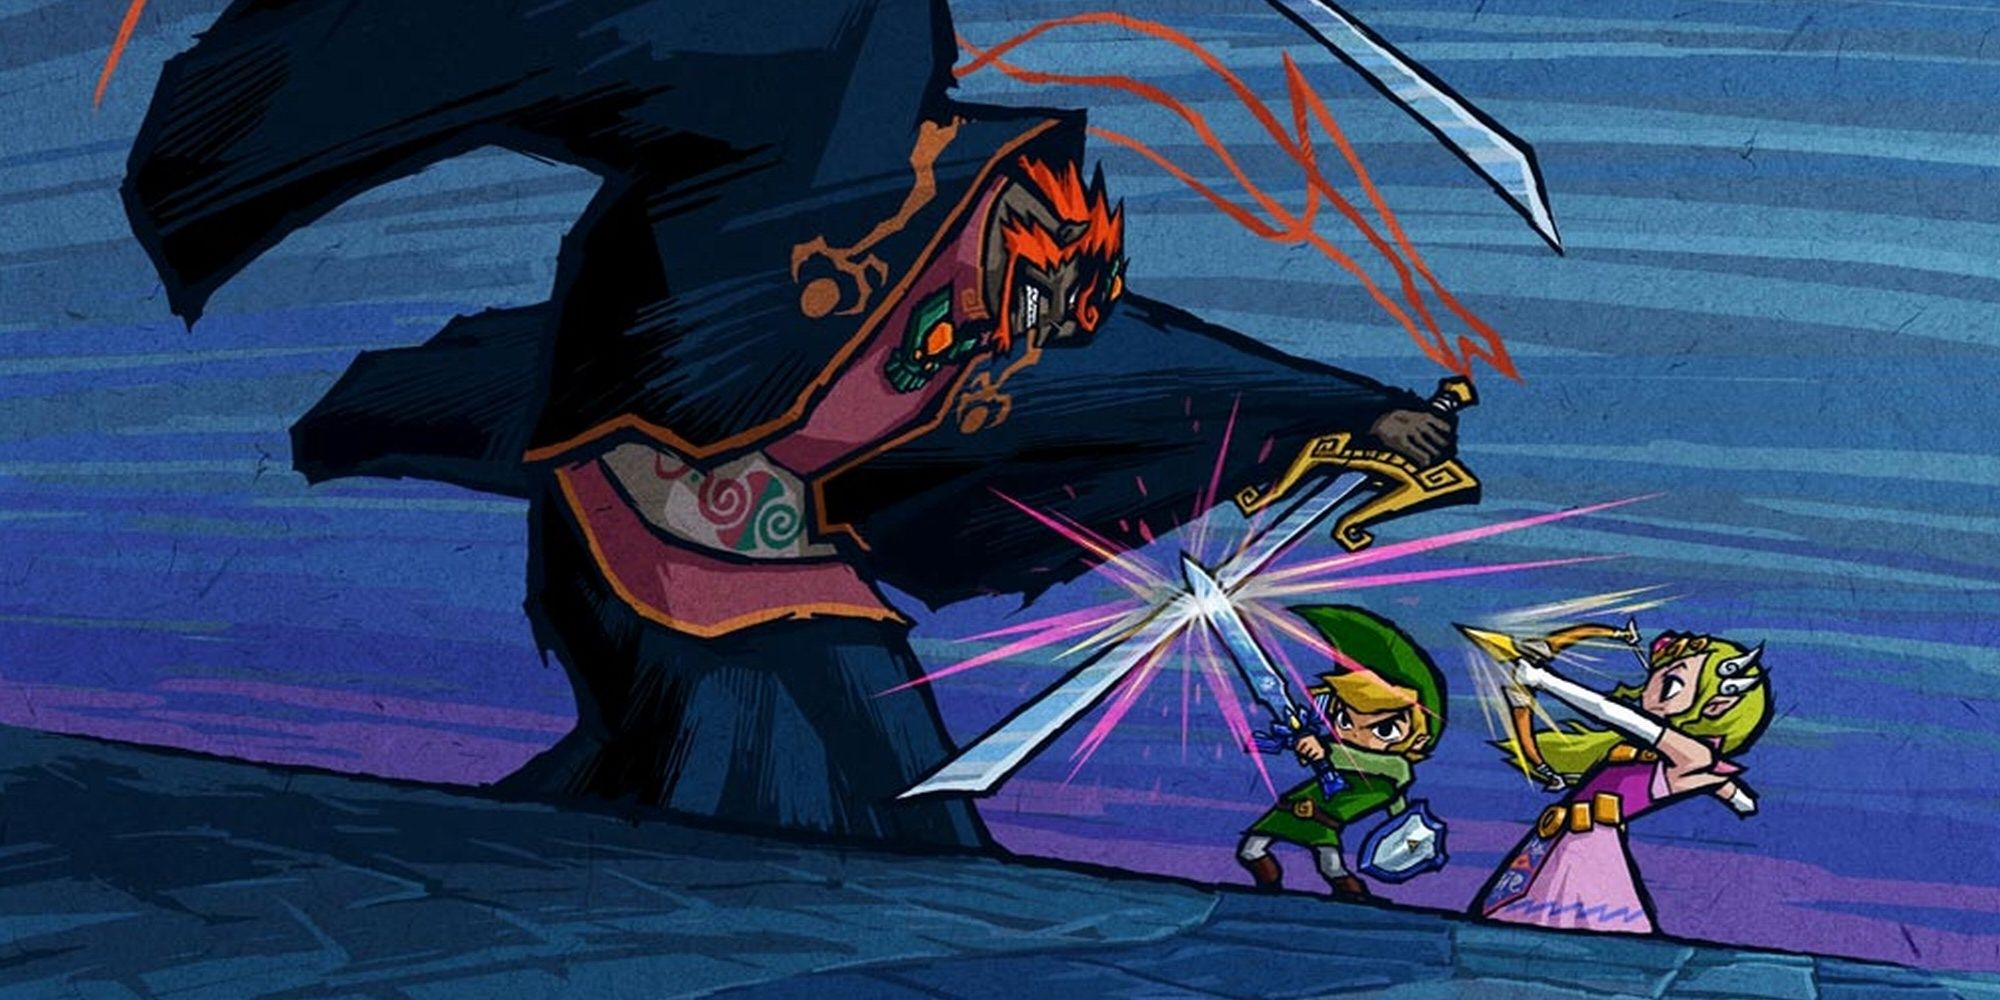 Ganondorf fighting Link and Zelda from the video game The Legend of Zelda: Wind Waker